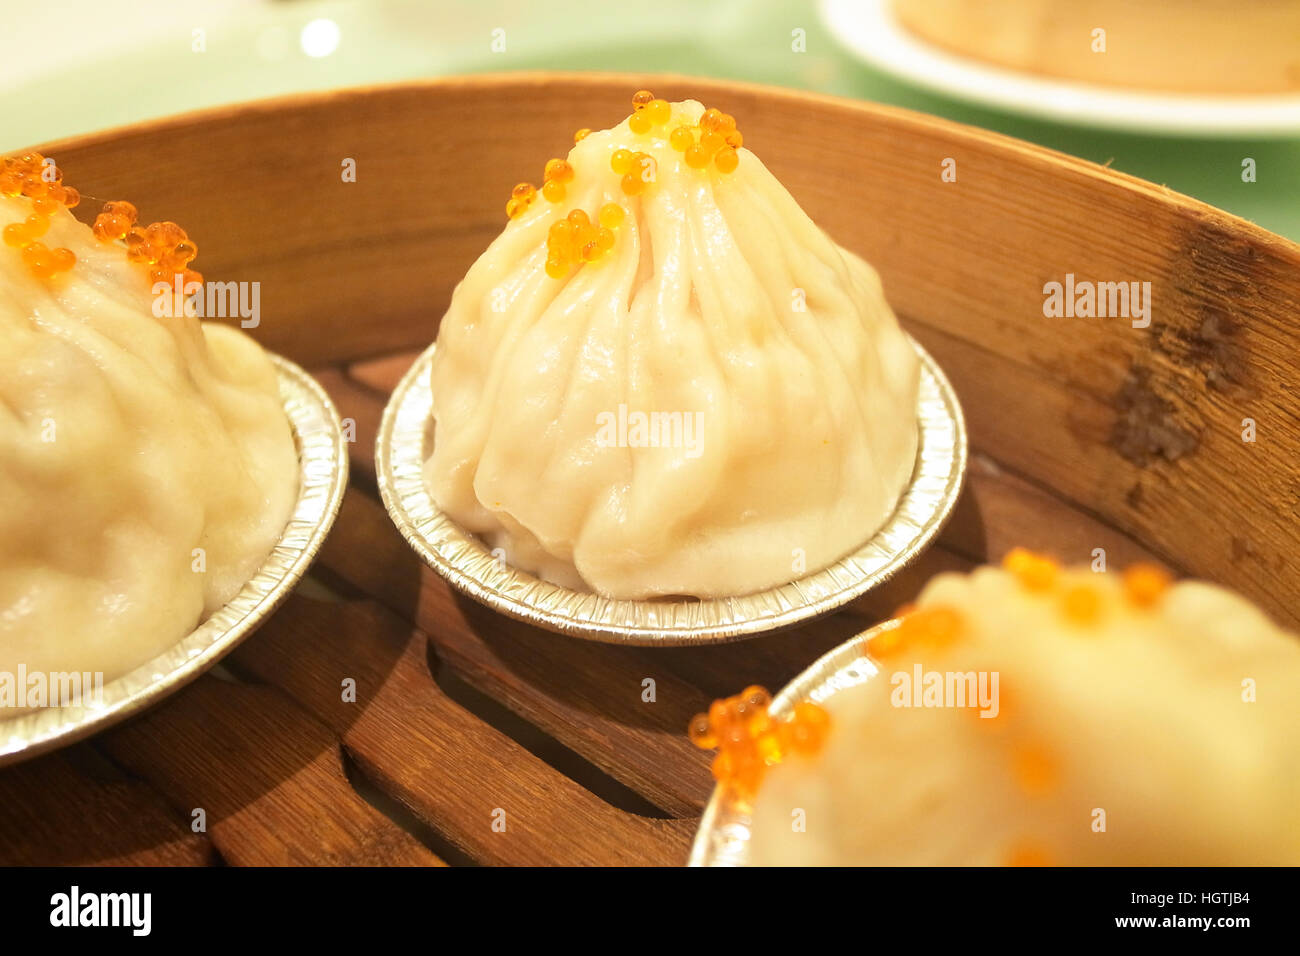 soup dumplings, xiaolongbao, xiao long bao, chinese food Stock Photo